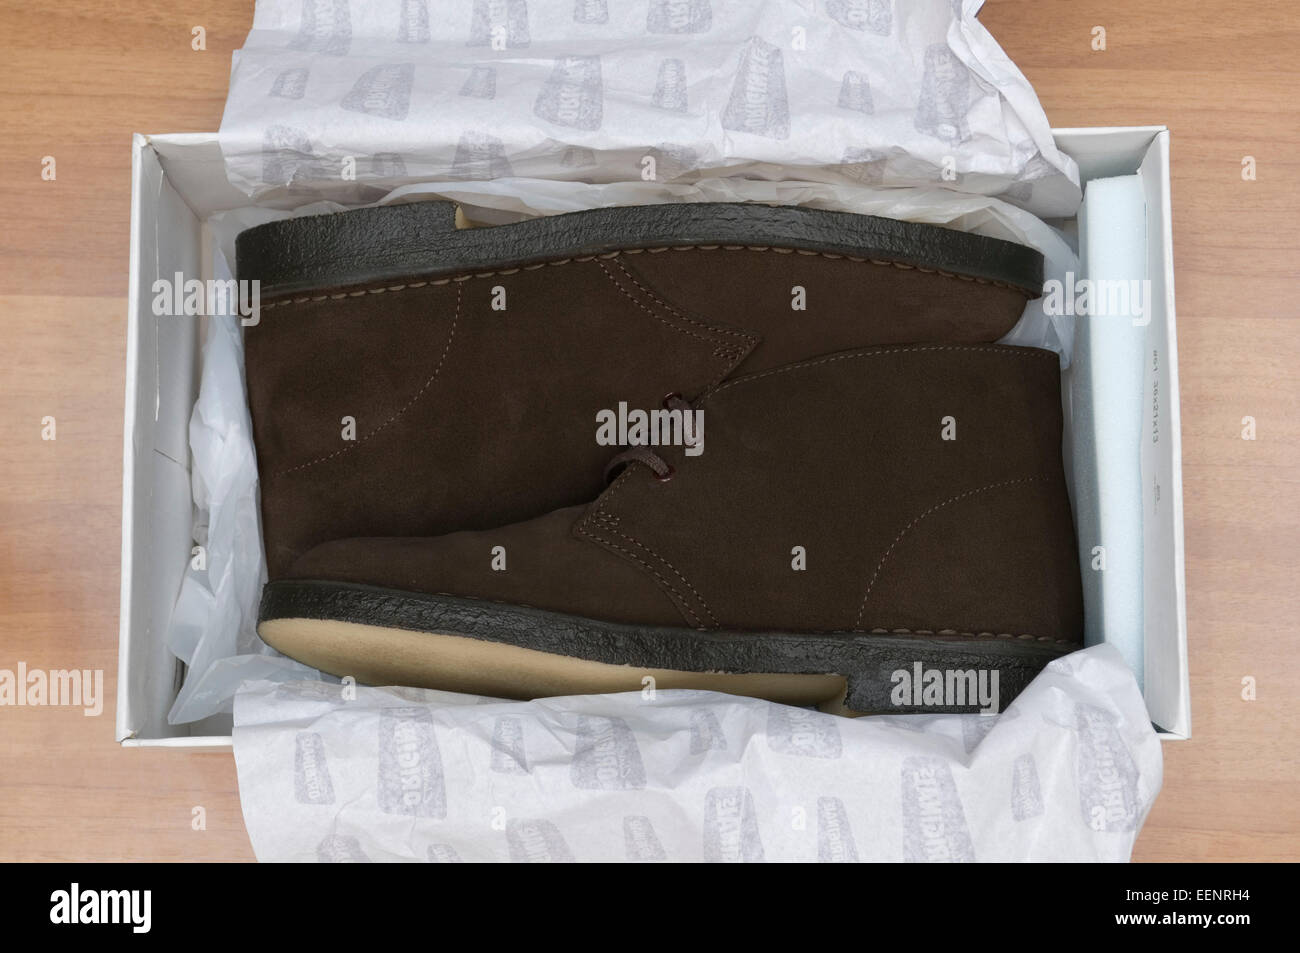 Nouvelles chaussures brunes en boîte avec du papier d'emballage Banque D'Images